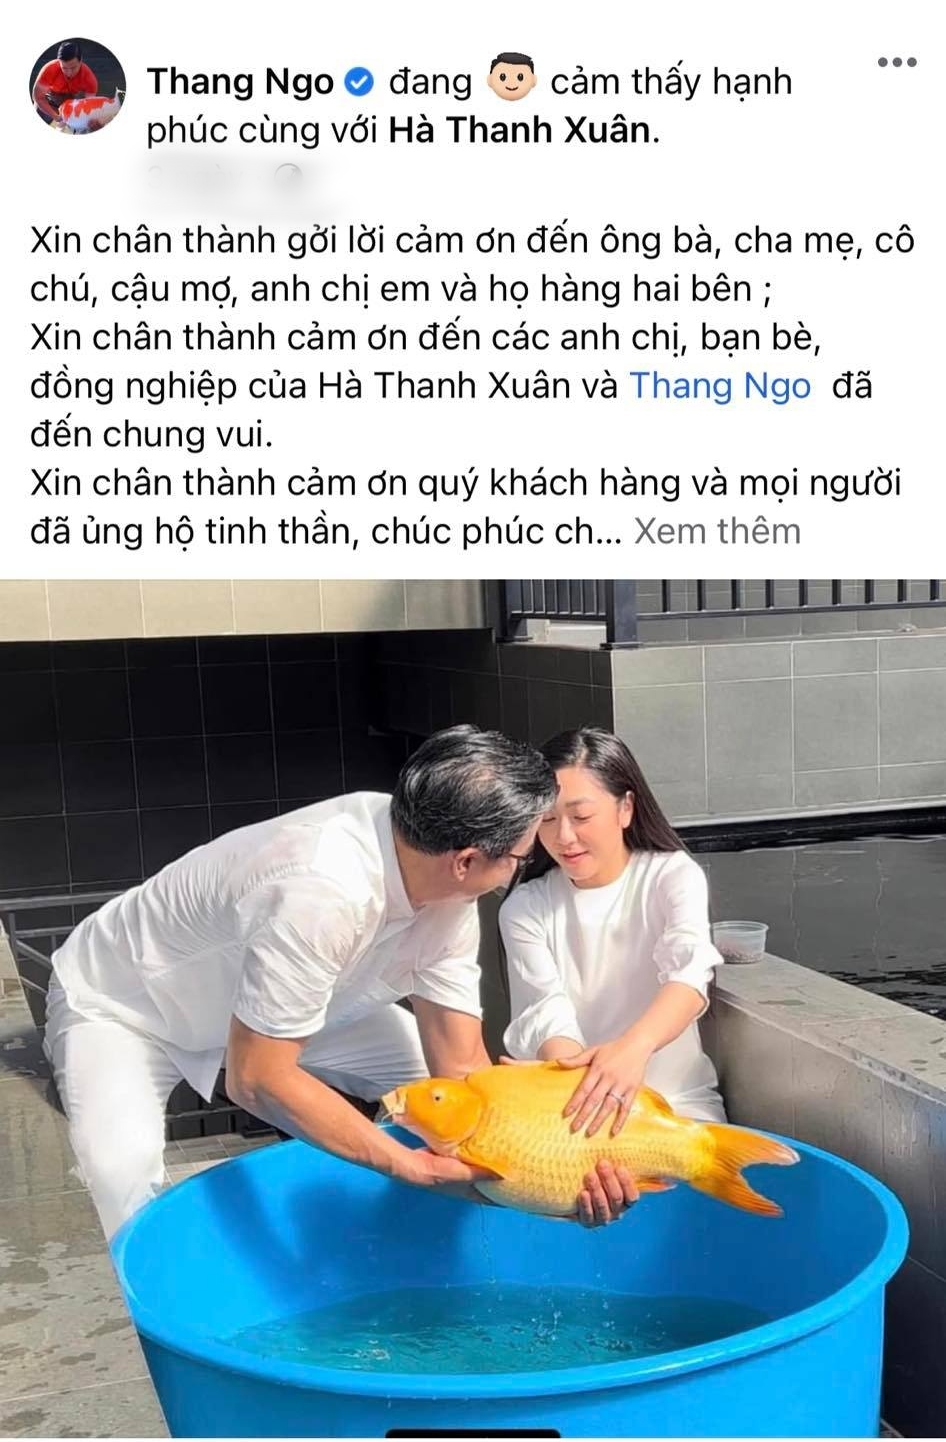  Doanh nhân Thắng Ngô từng chia sẻ nhiều bài viết tình cảm đến vợ. (Ảnh: Chụp màn hình FB Thang Ngo) - Tin sao Viet - Tin tuc sao Viet - Scandal sao Viet - Tin tuc cua Sao - Tin cua Sao